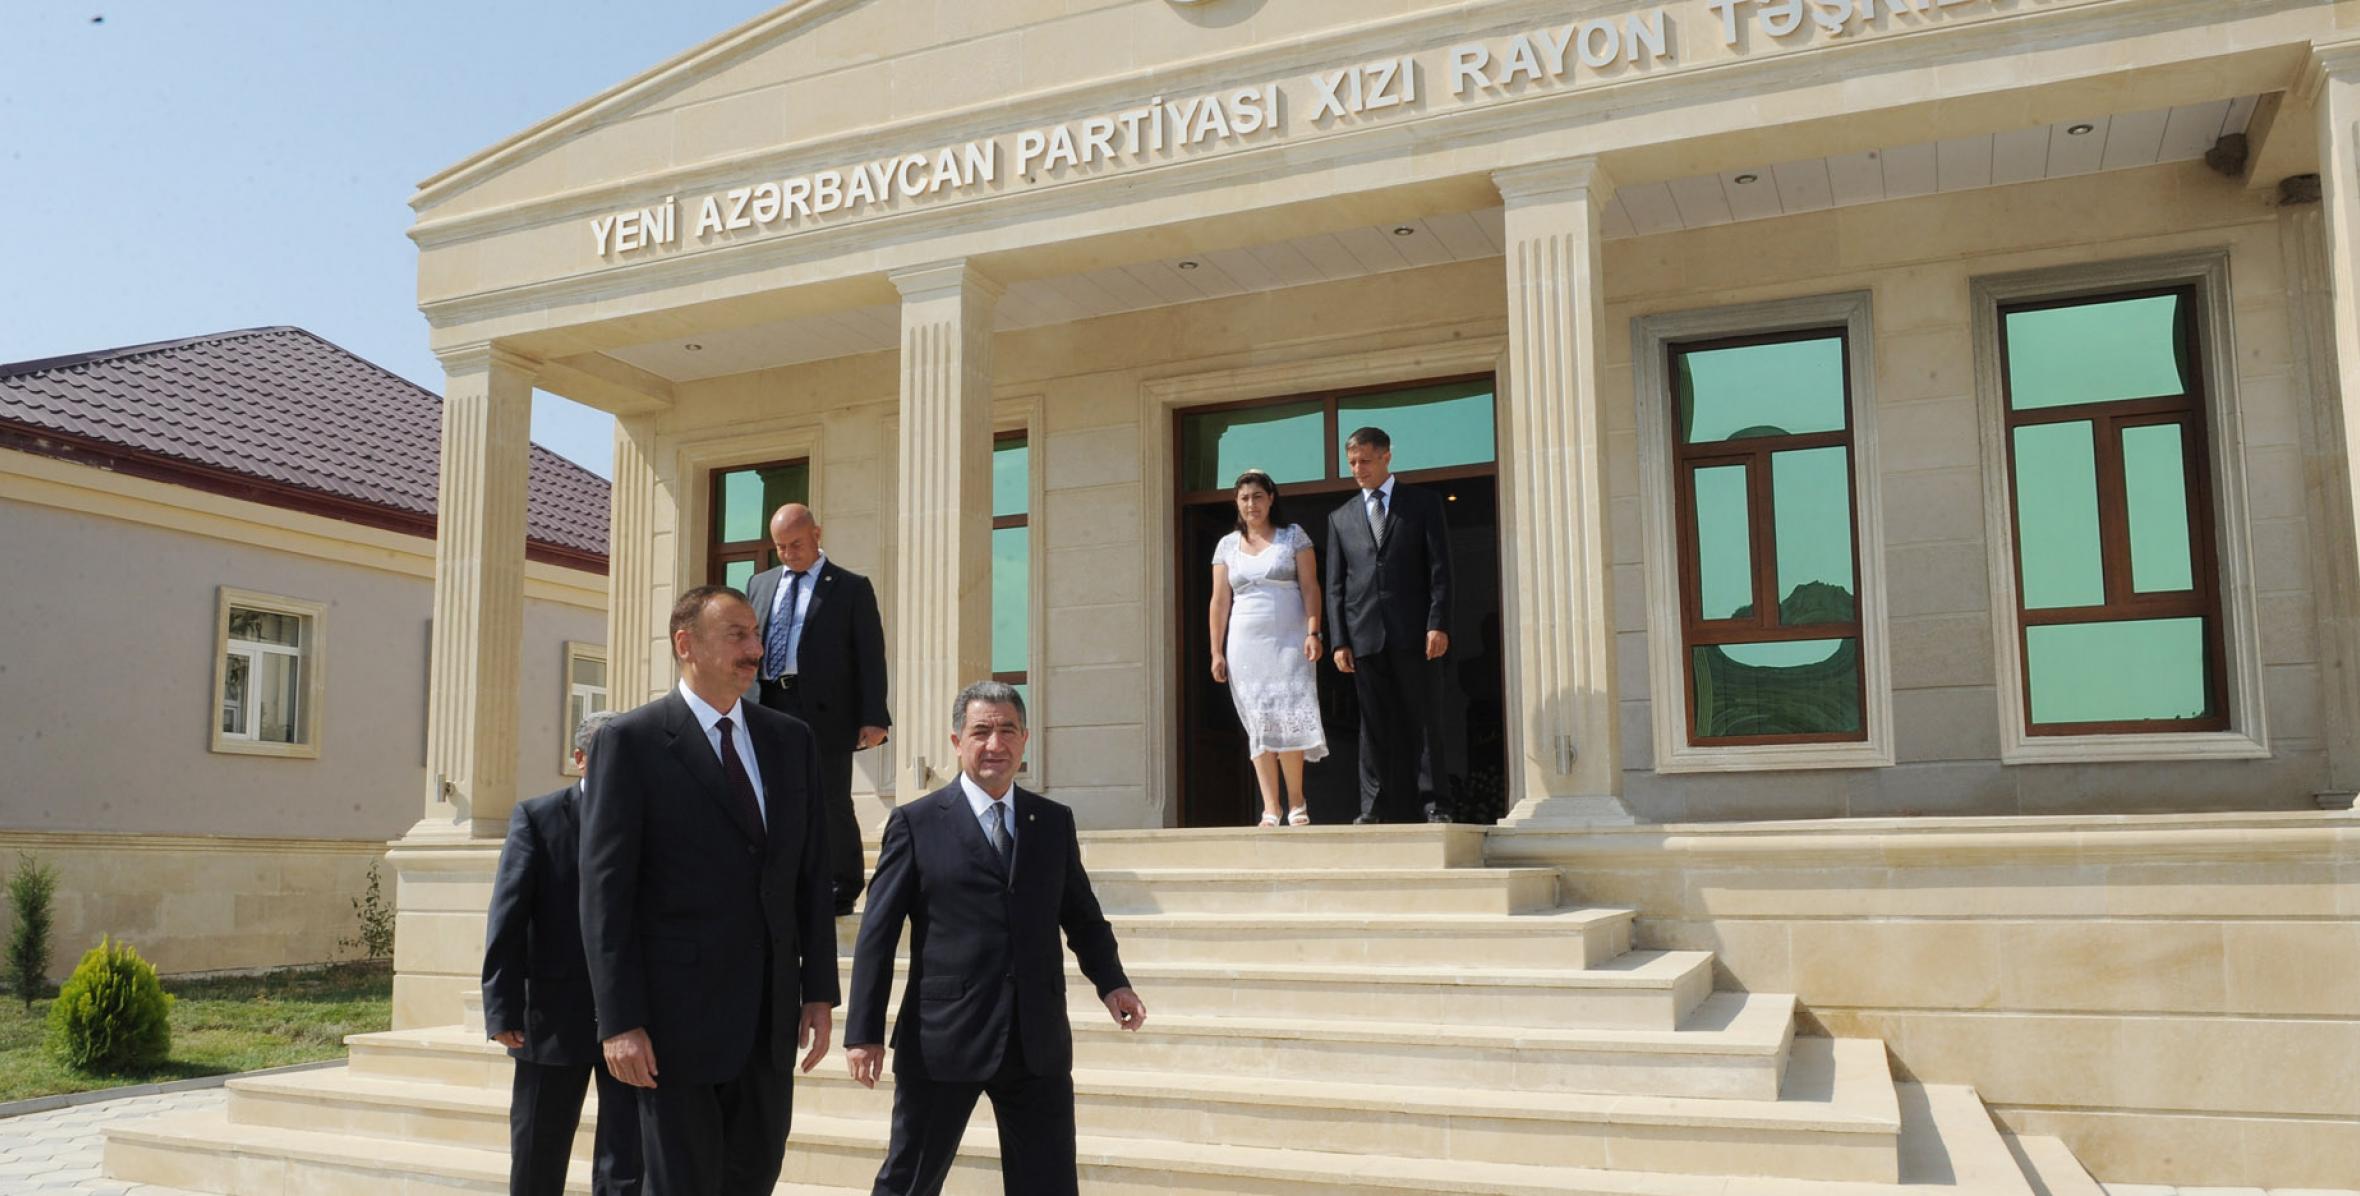 Ильхам Алиев принял участие в открытии административного здания Хызинской районной организации партии «Ени Азербайджан»